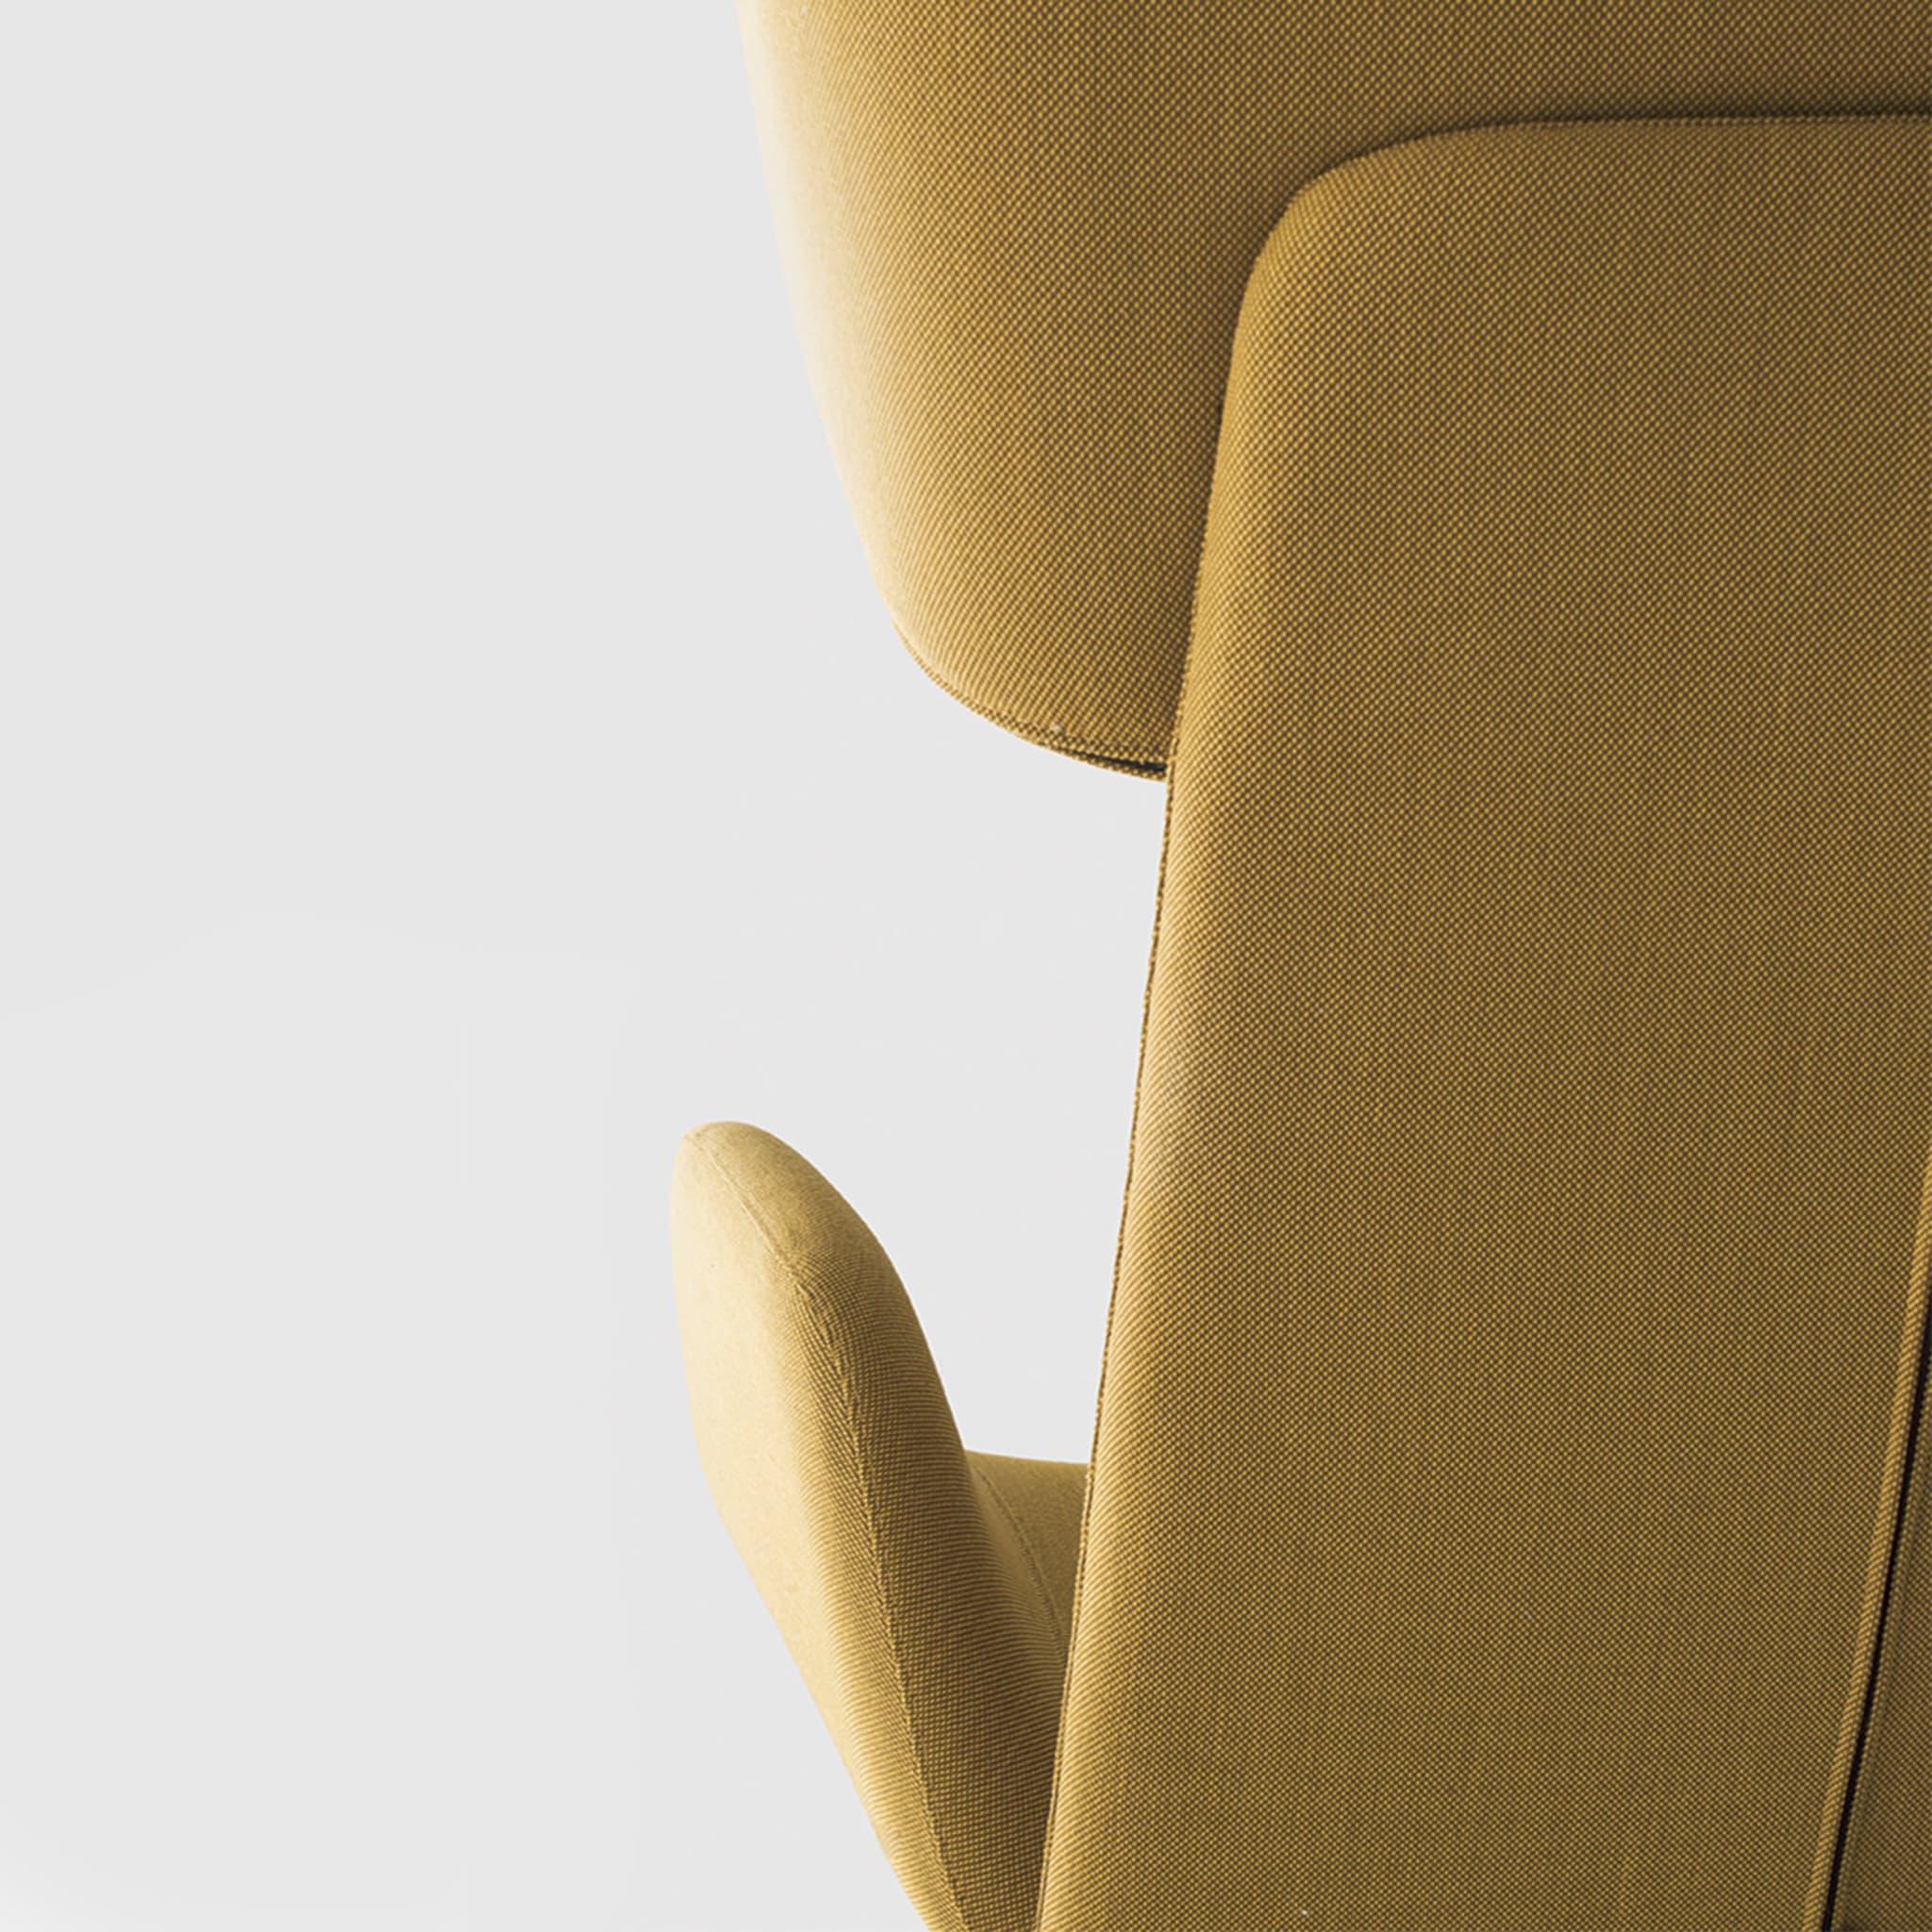 Myplace Armchair with Enveloping Headrest by Michael Geldmacher - Alternative view 4